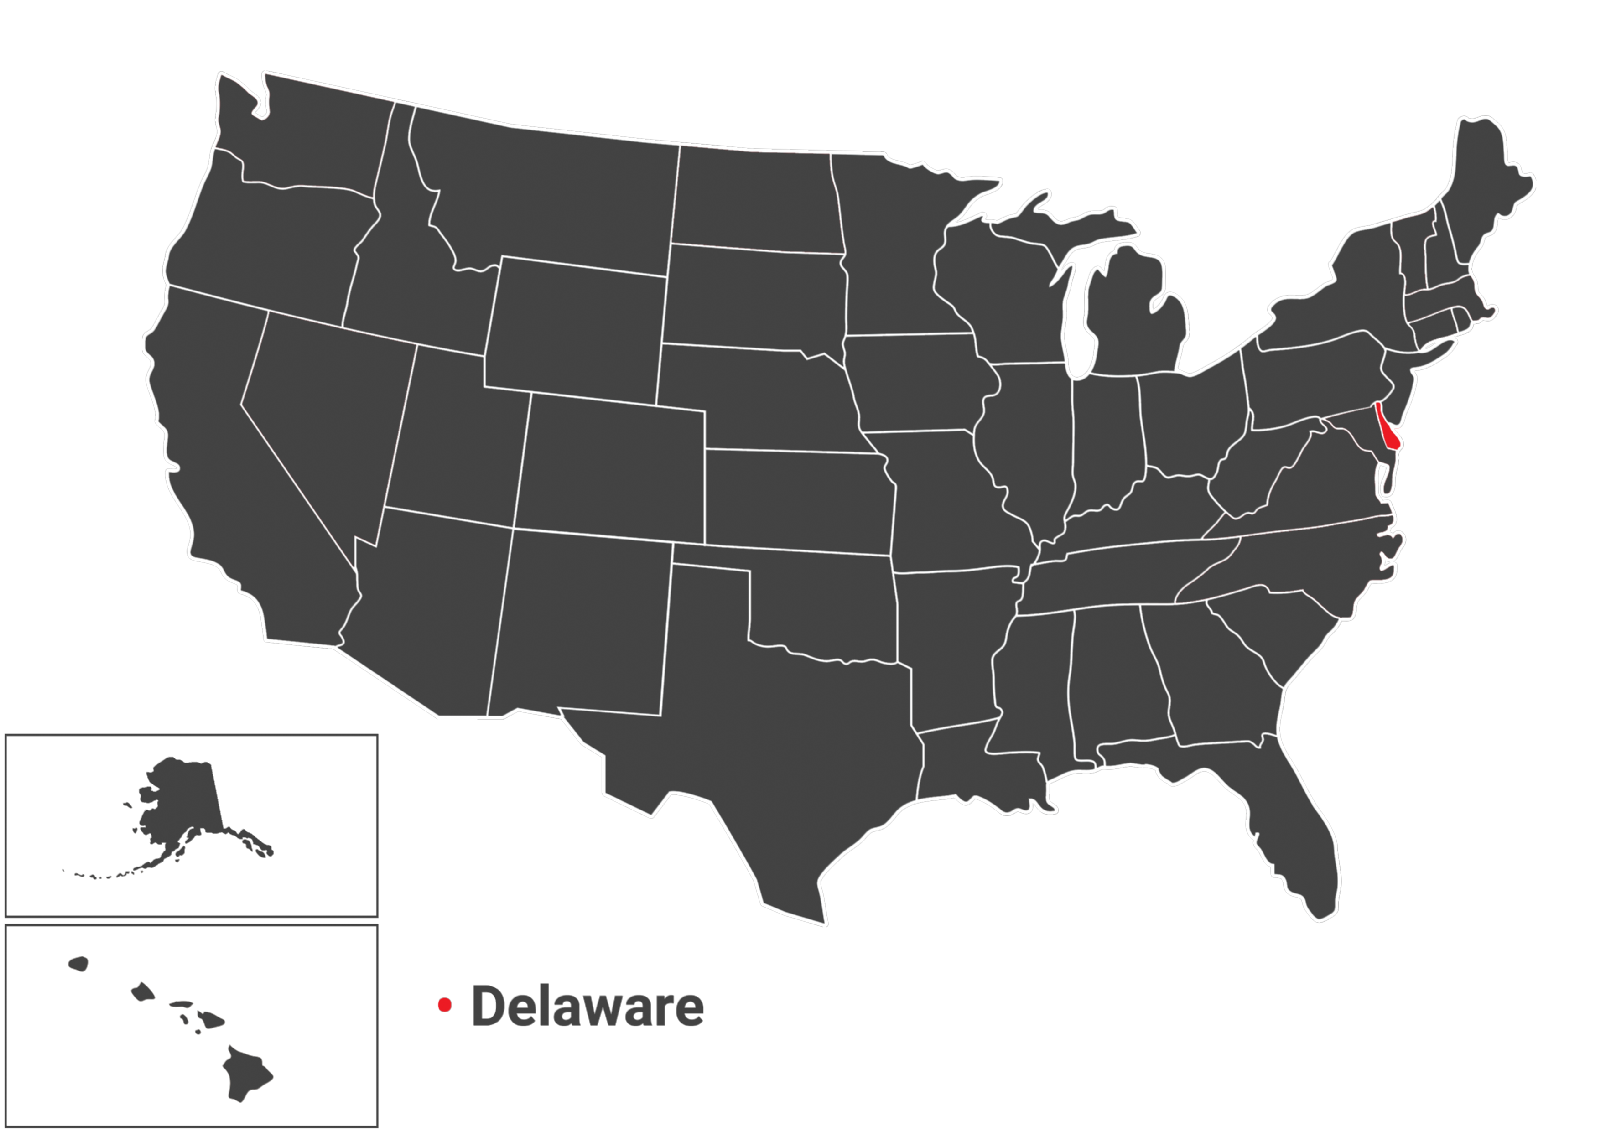 نقشه جغرافیایی ایالت DELAWARE